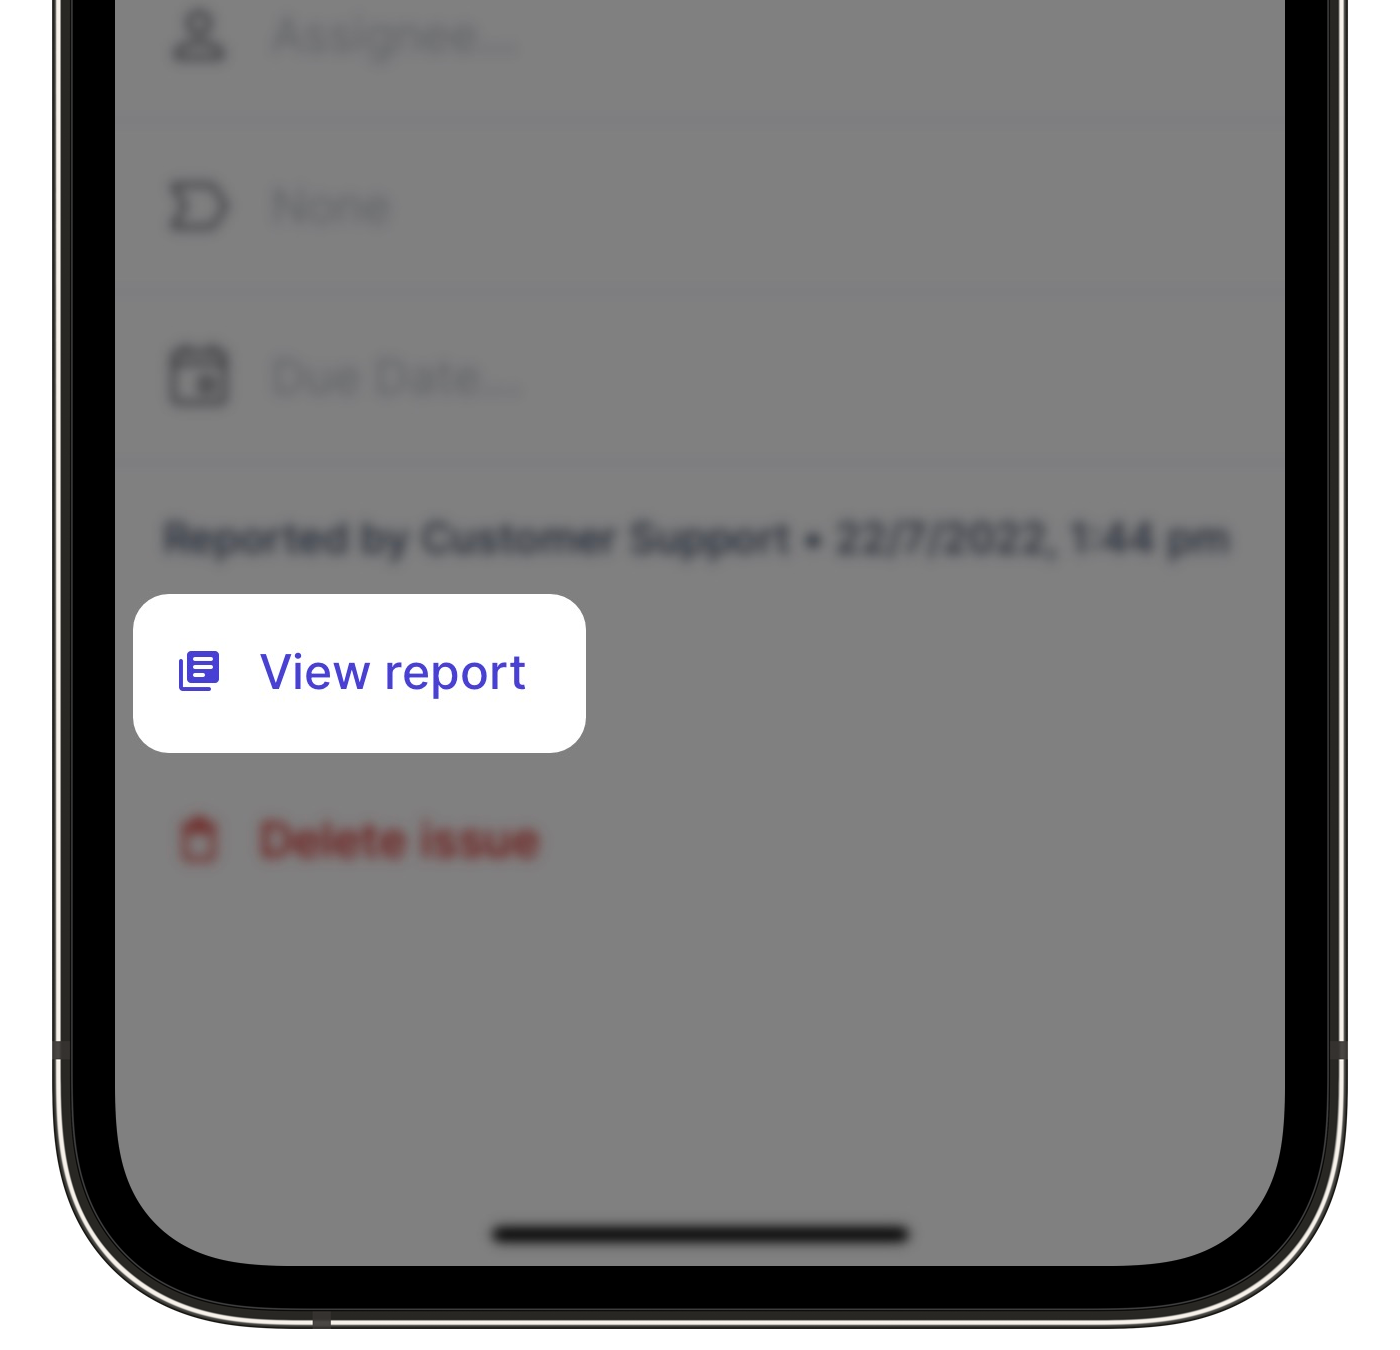 Exportar un informe de contratiempo como PDF a través de la aplicación móvil.